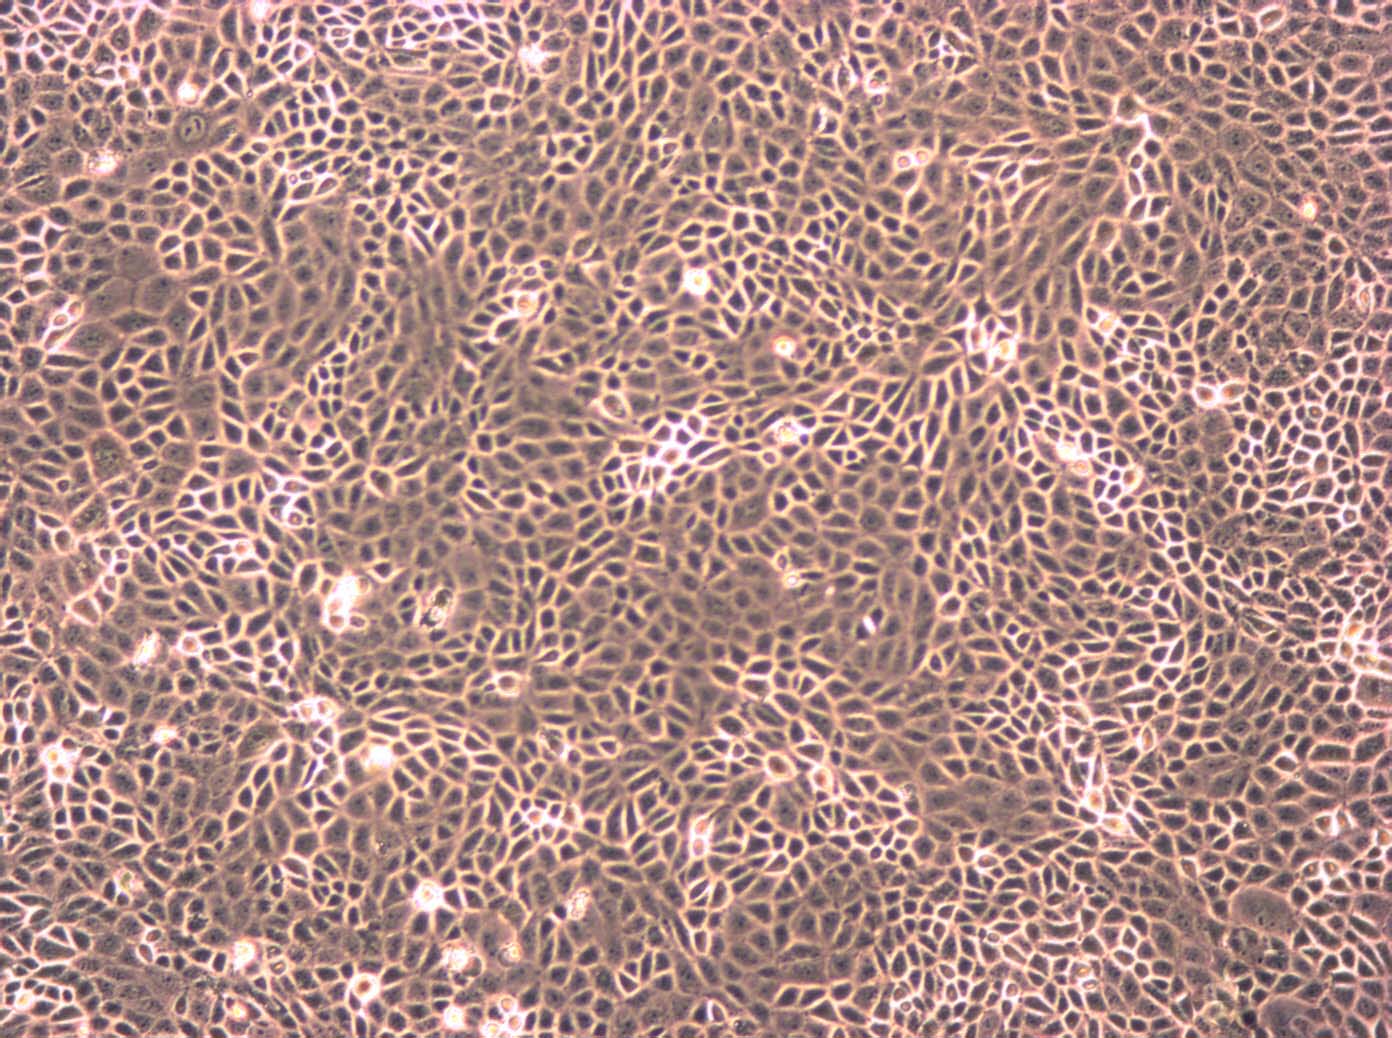 TE-6:人食管癌复苏细胞(提供STR鉴定图谱),TE-6